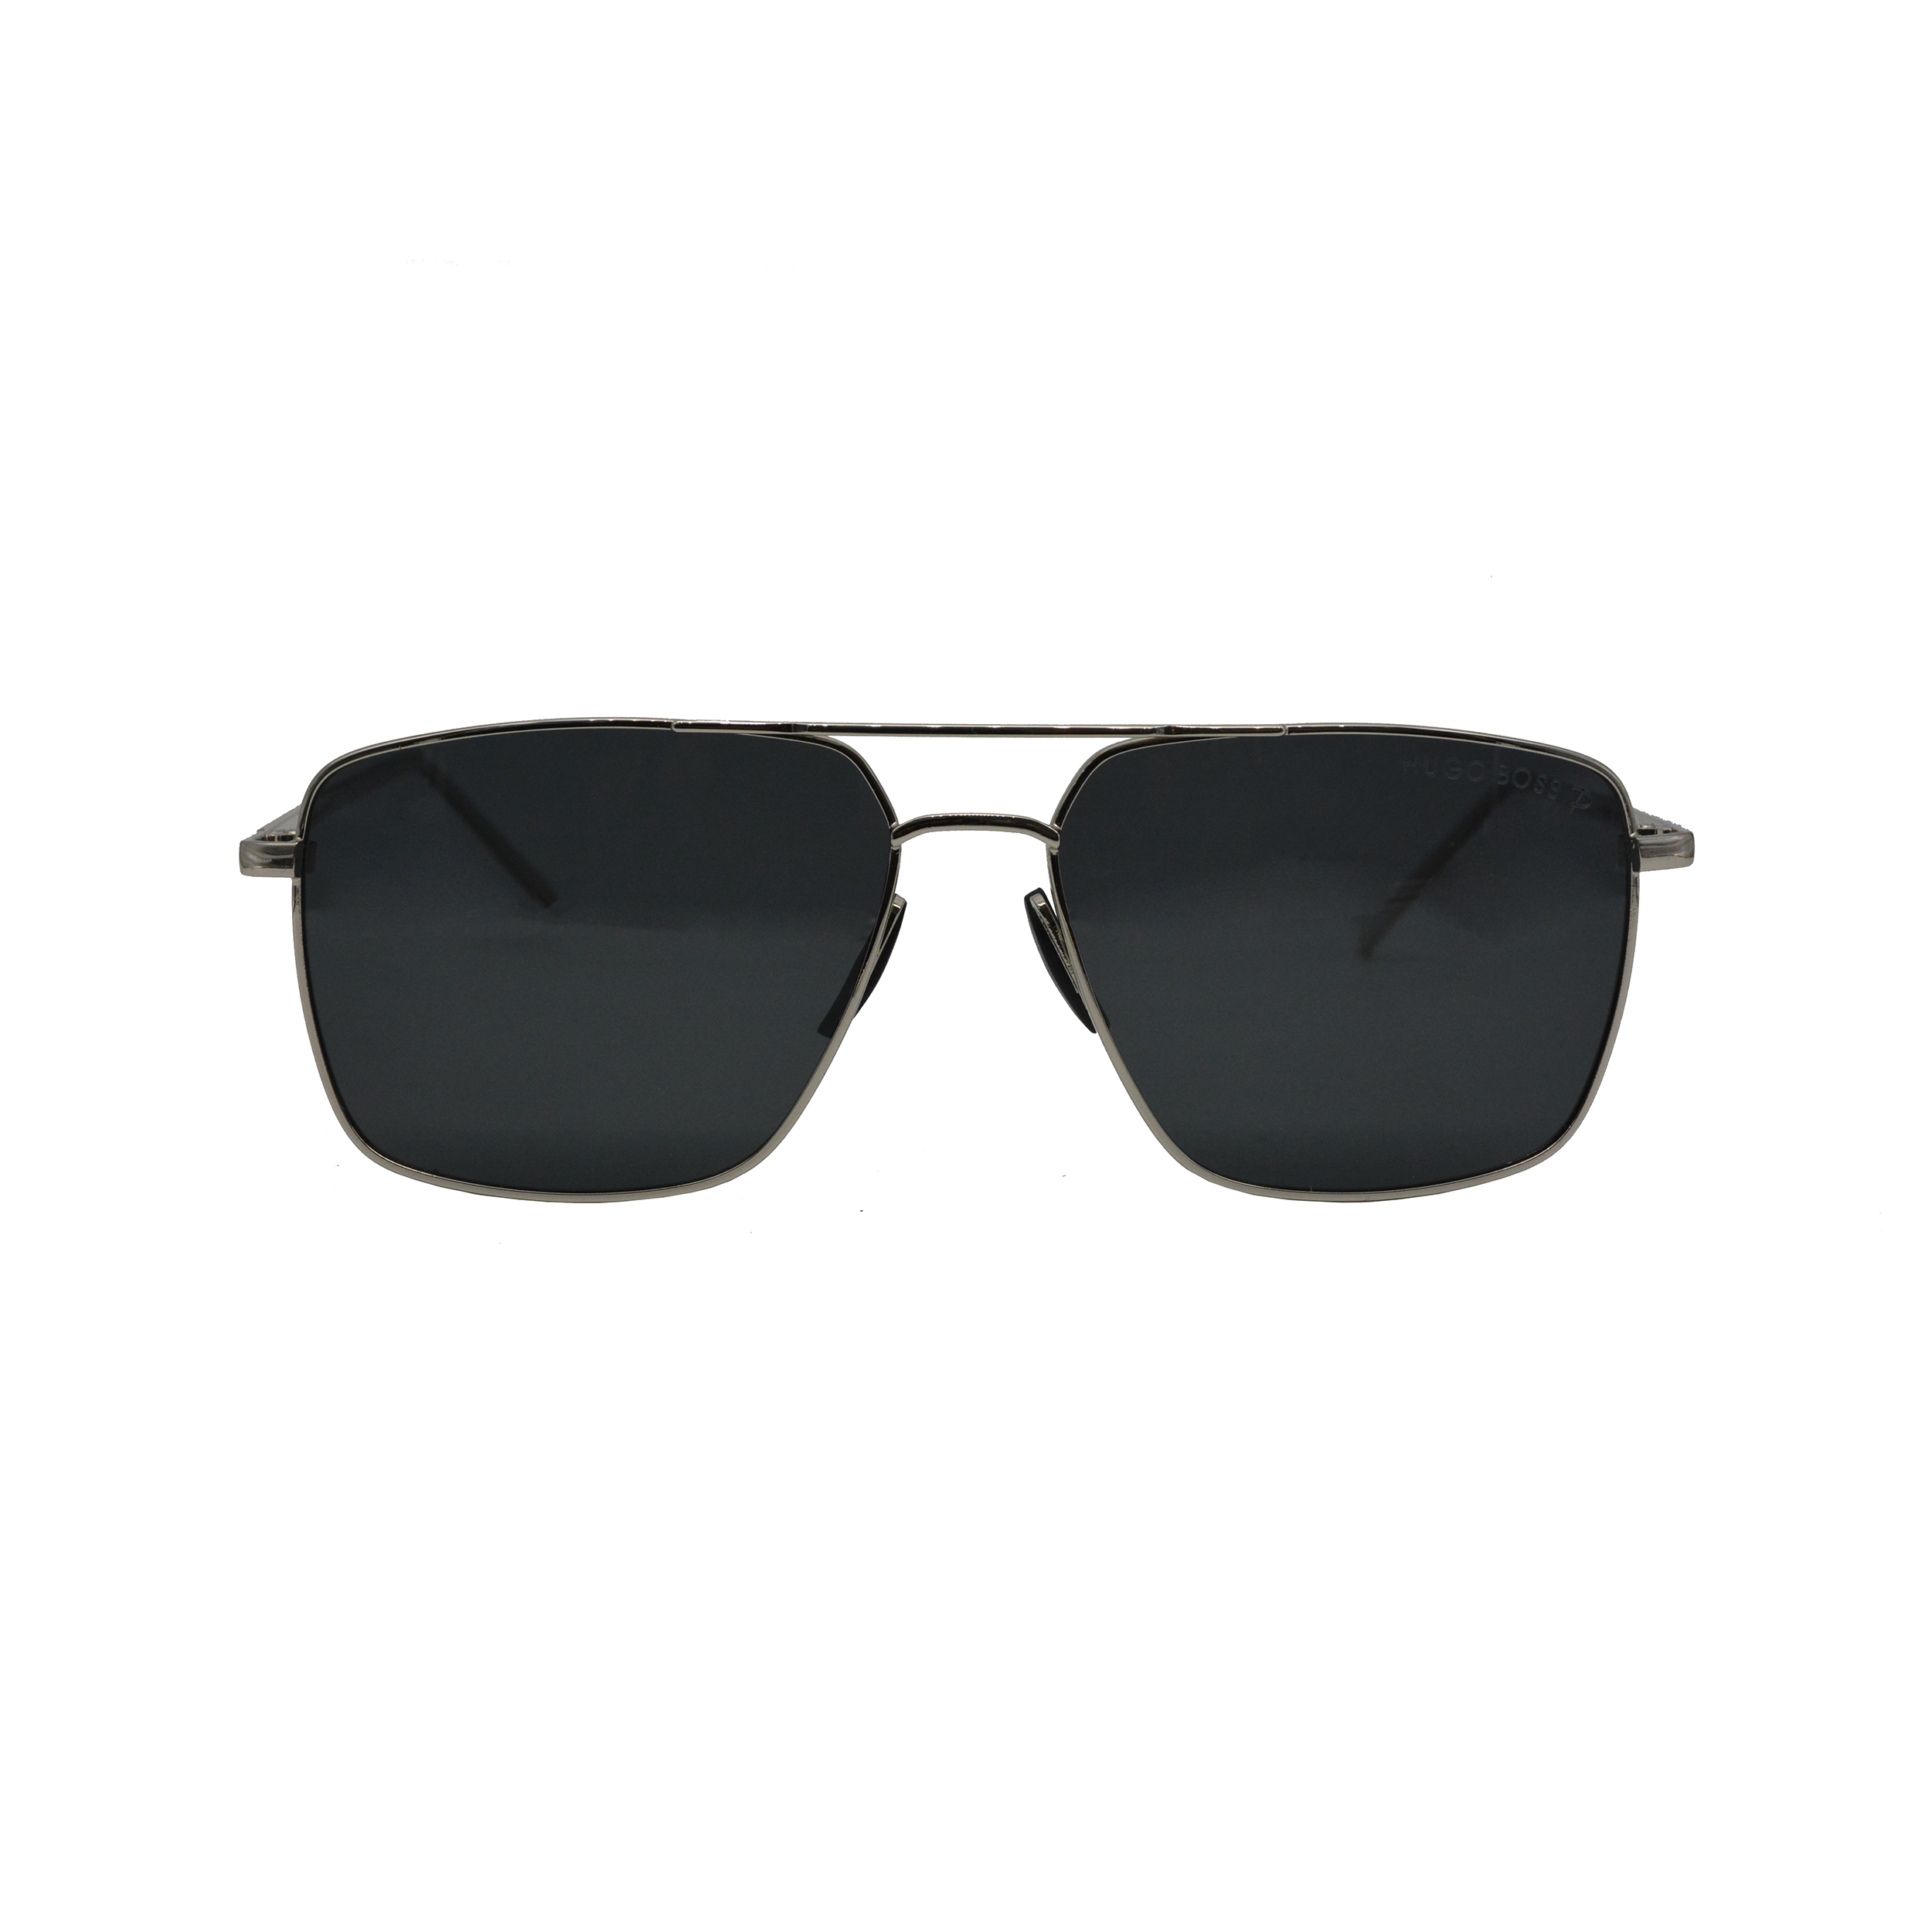 نکته خرید - قیمت روز عینک آفتابی هوگو باس مدل HB1063 581432 POLARIZED TI خرید